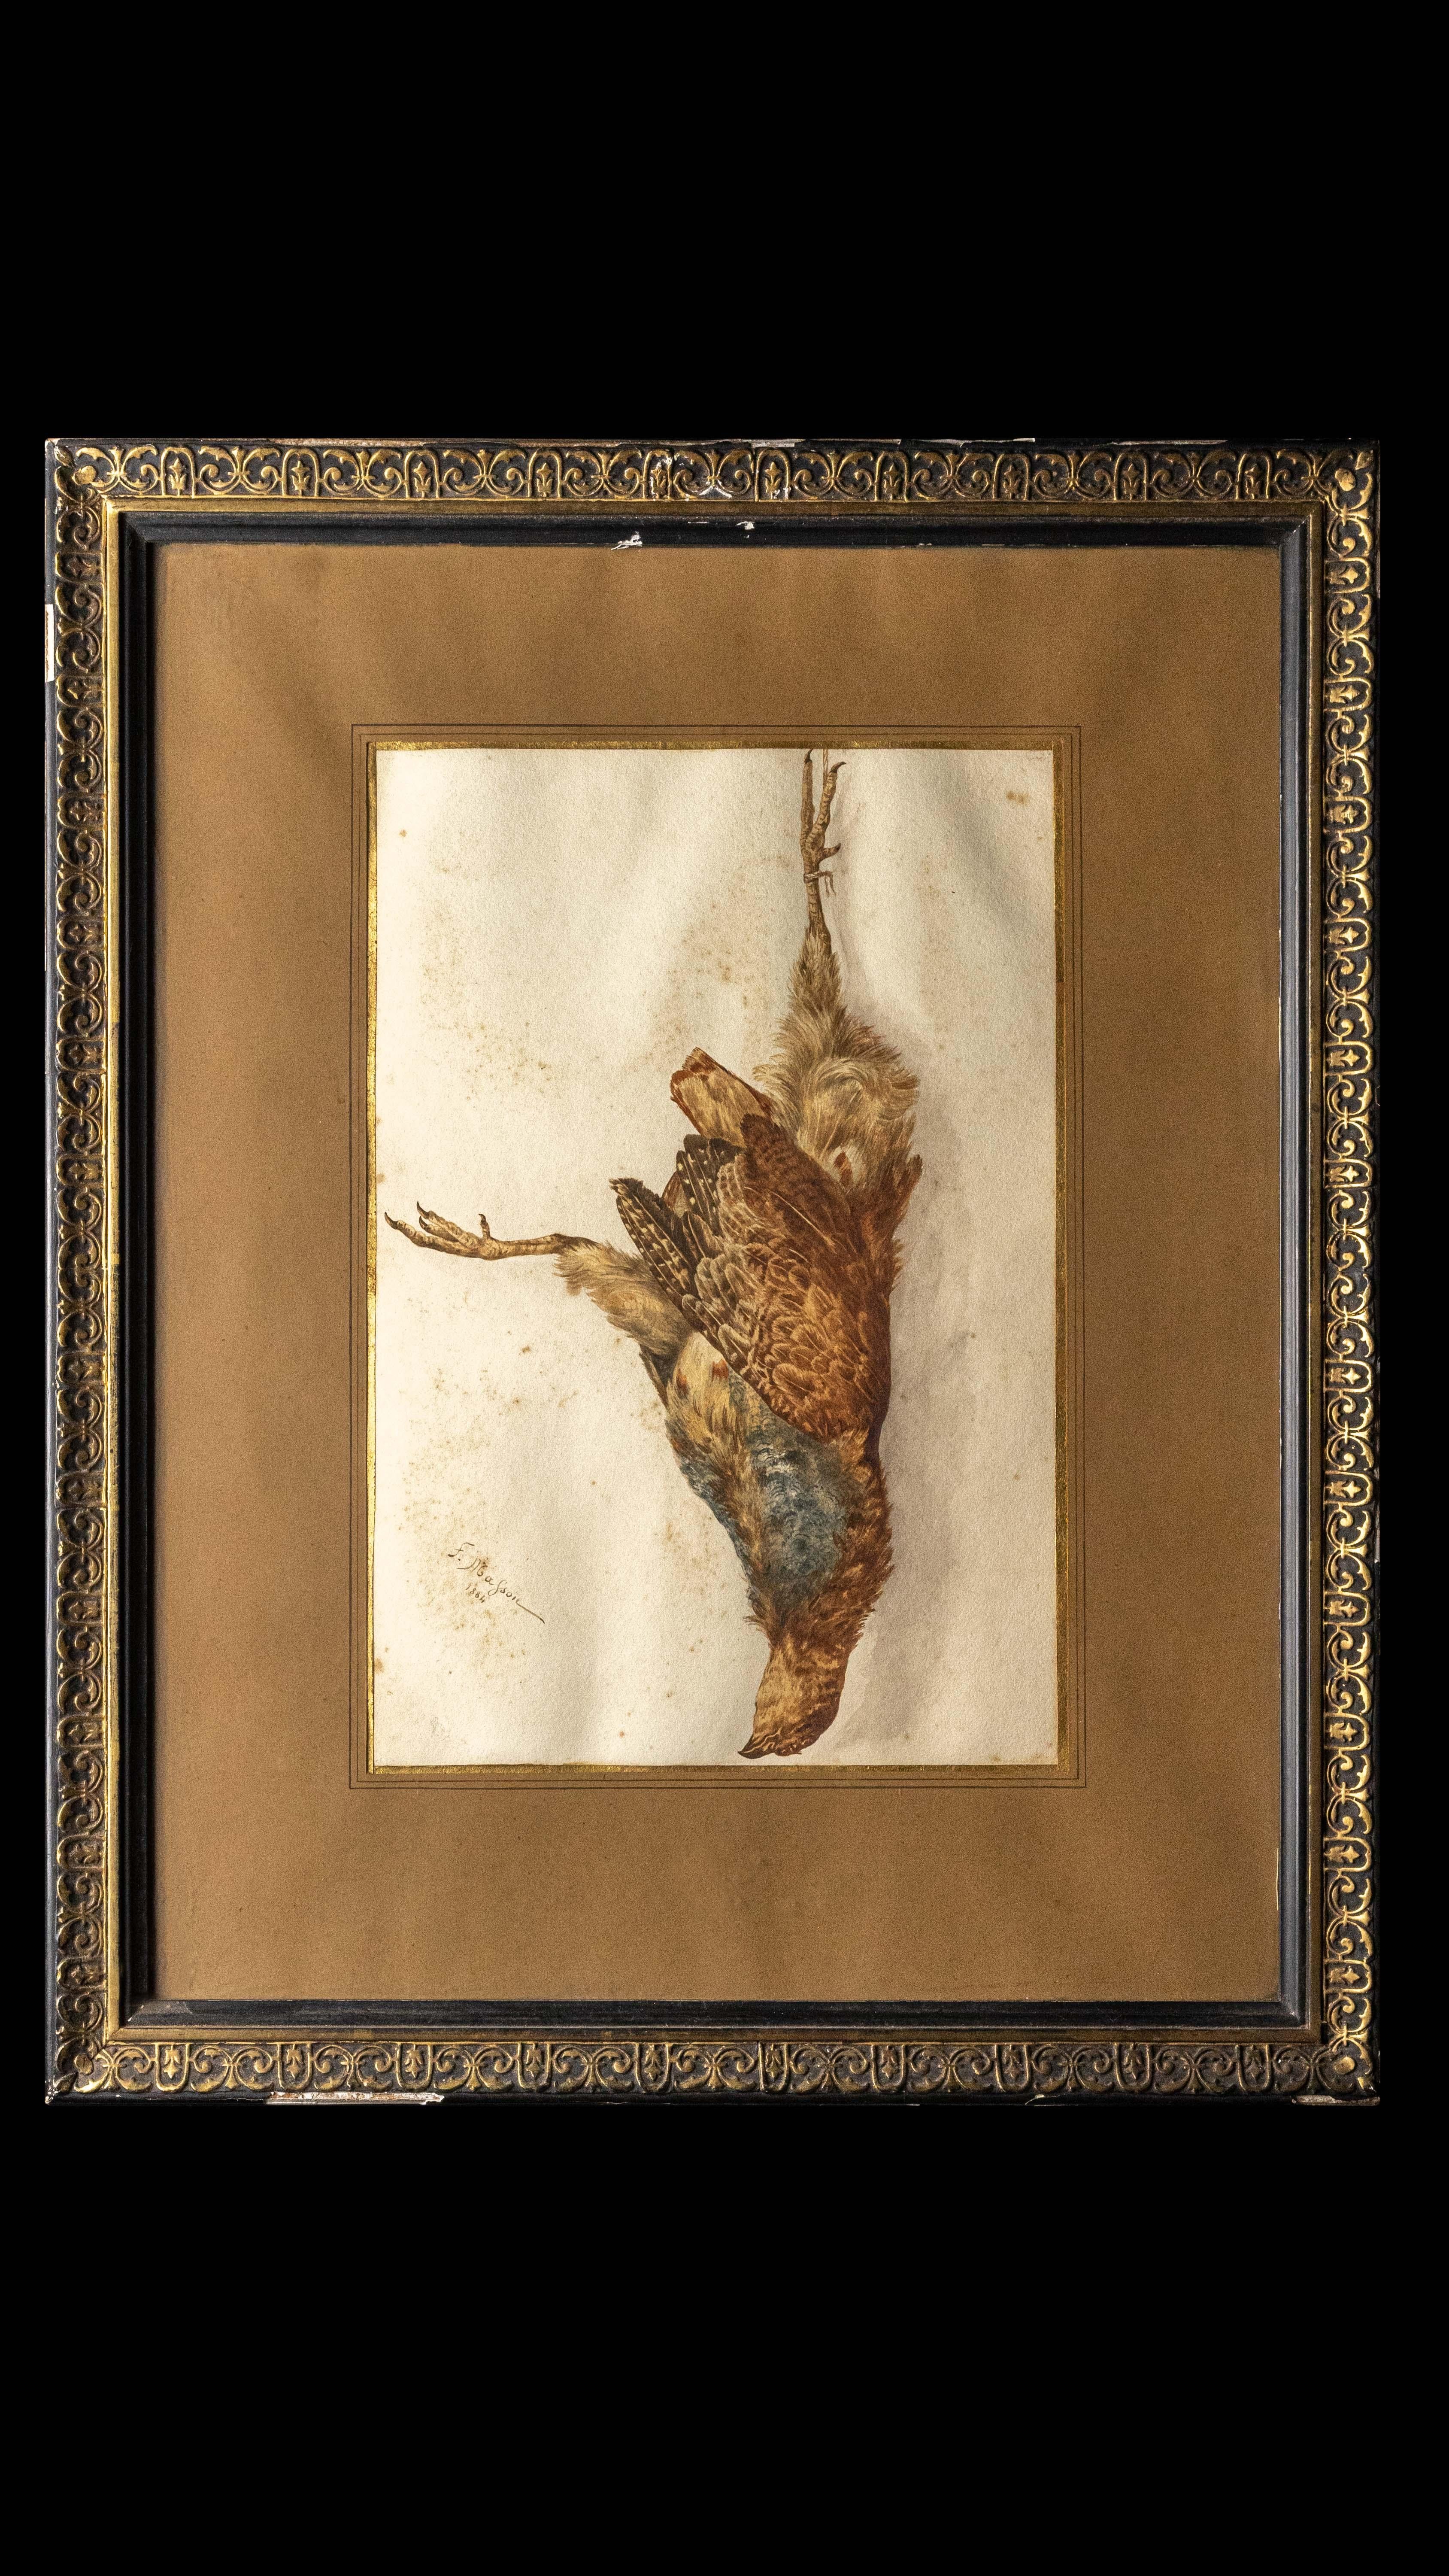 Gerahmte Gouche eines verstorbenen Vogels aus dem 19. Jahrhundert, signiert Frederic Masson:

Maße: 16.5